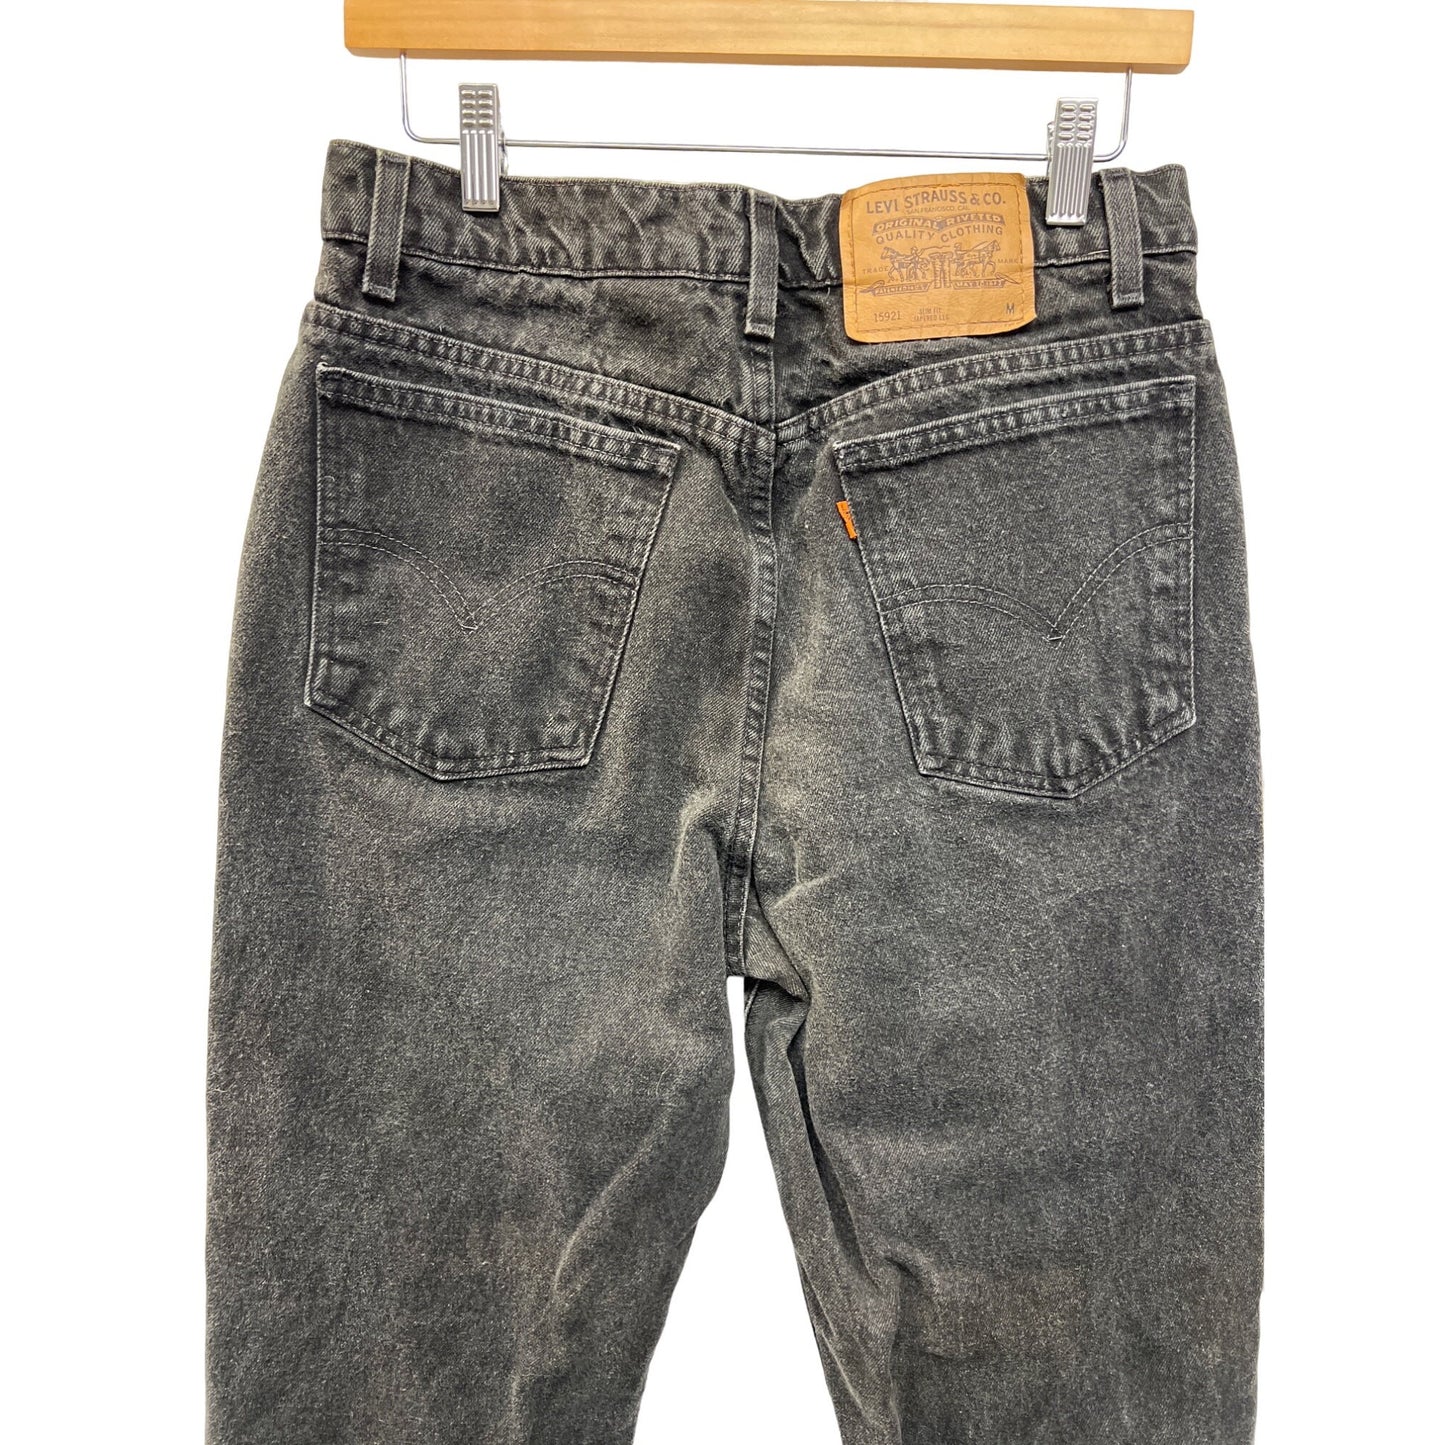 Levi's Vintage 90's Orange Tab 921 Jeans